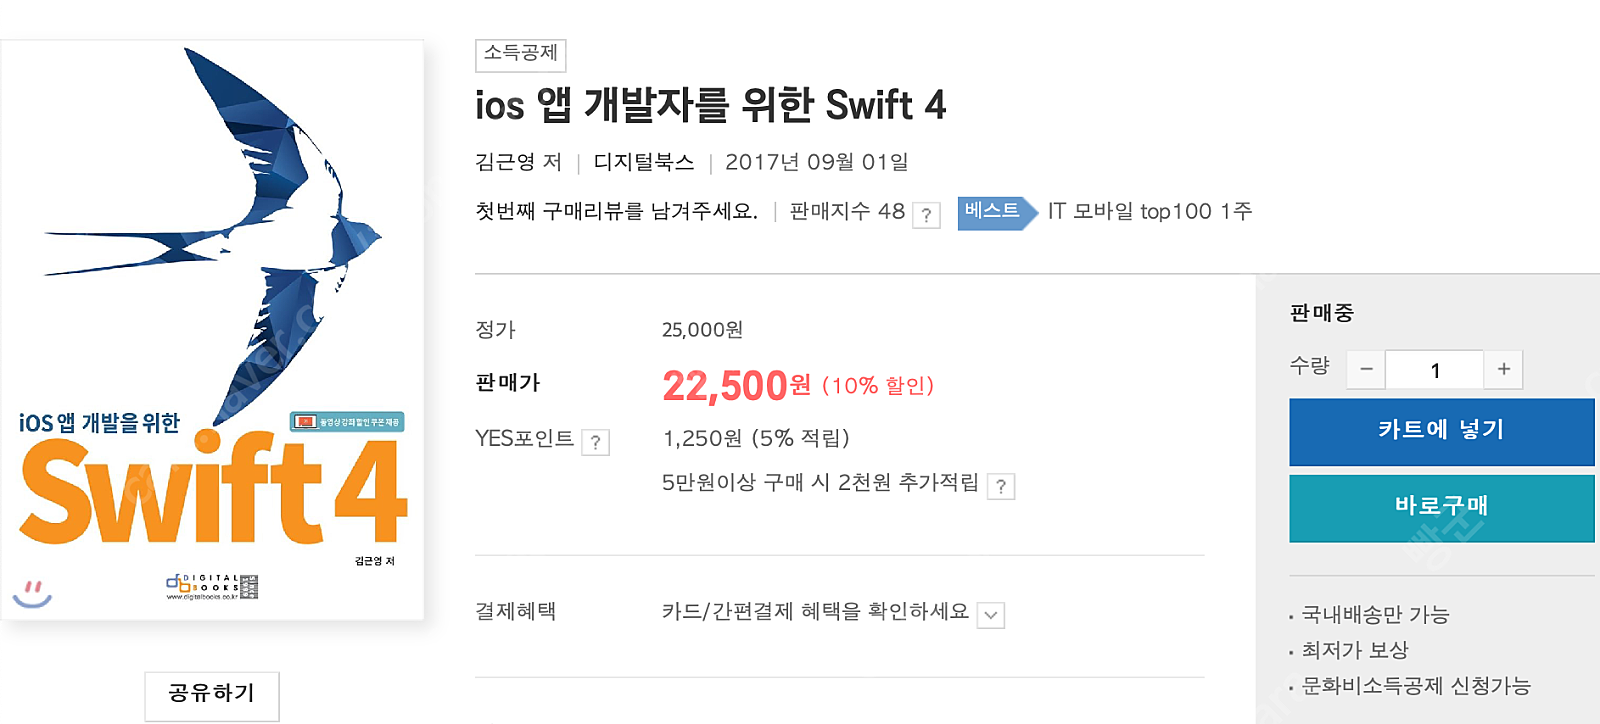 (새제품) ios 앱 개발자를 위한 Swift 4